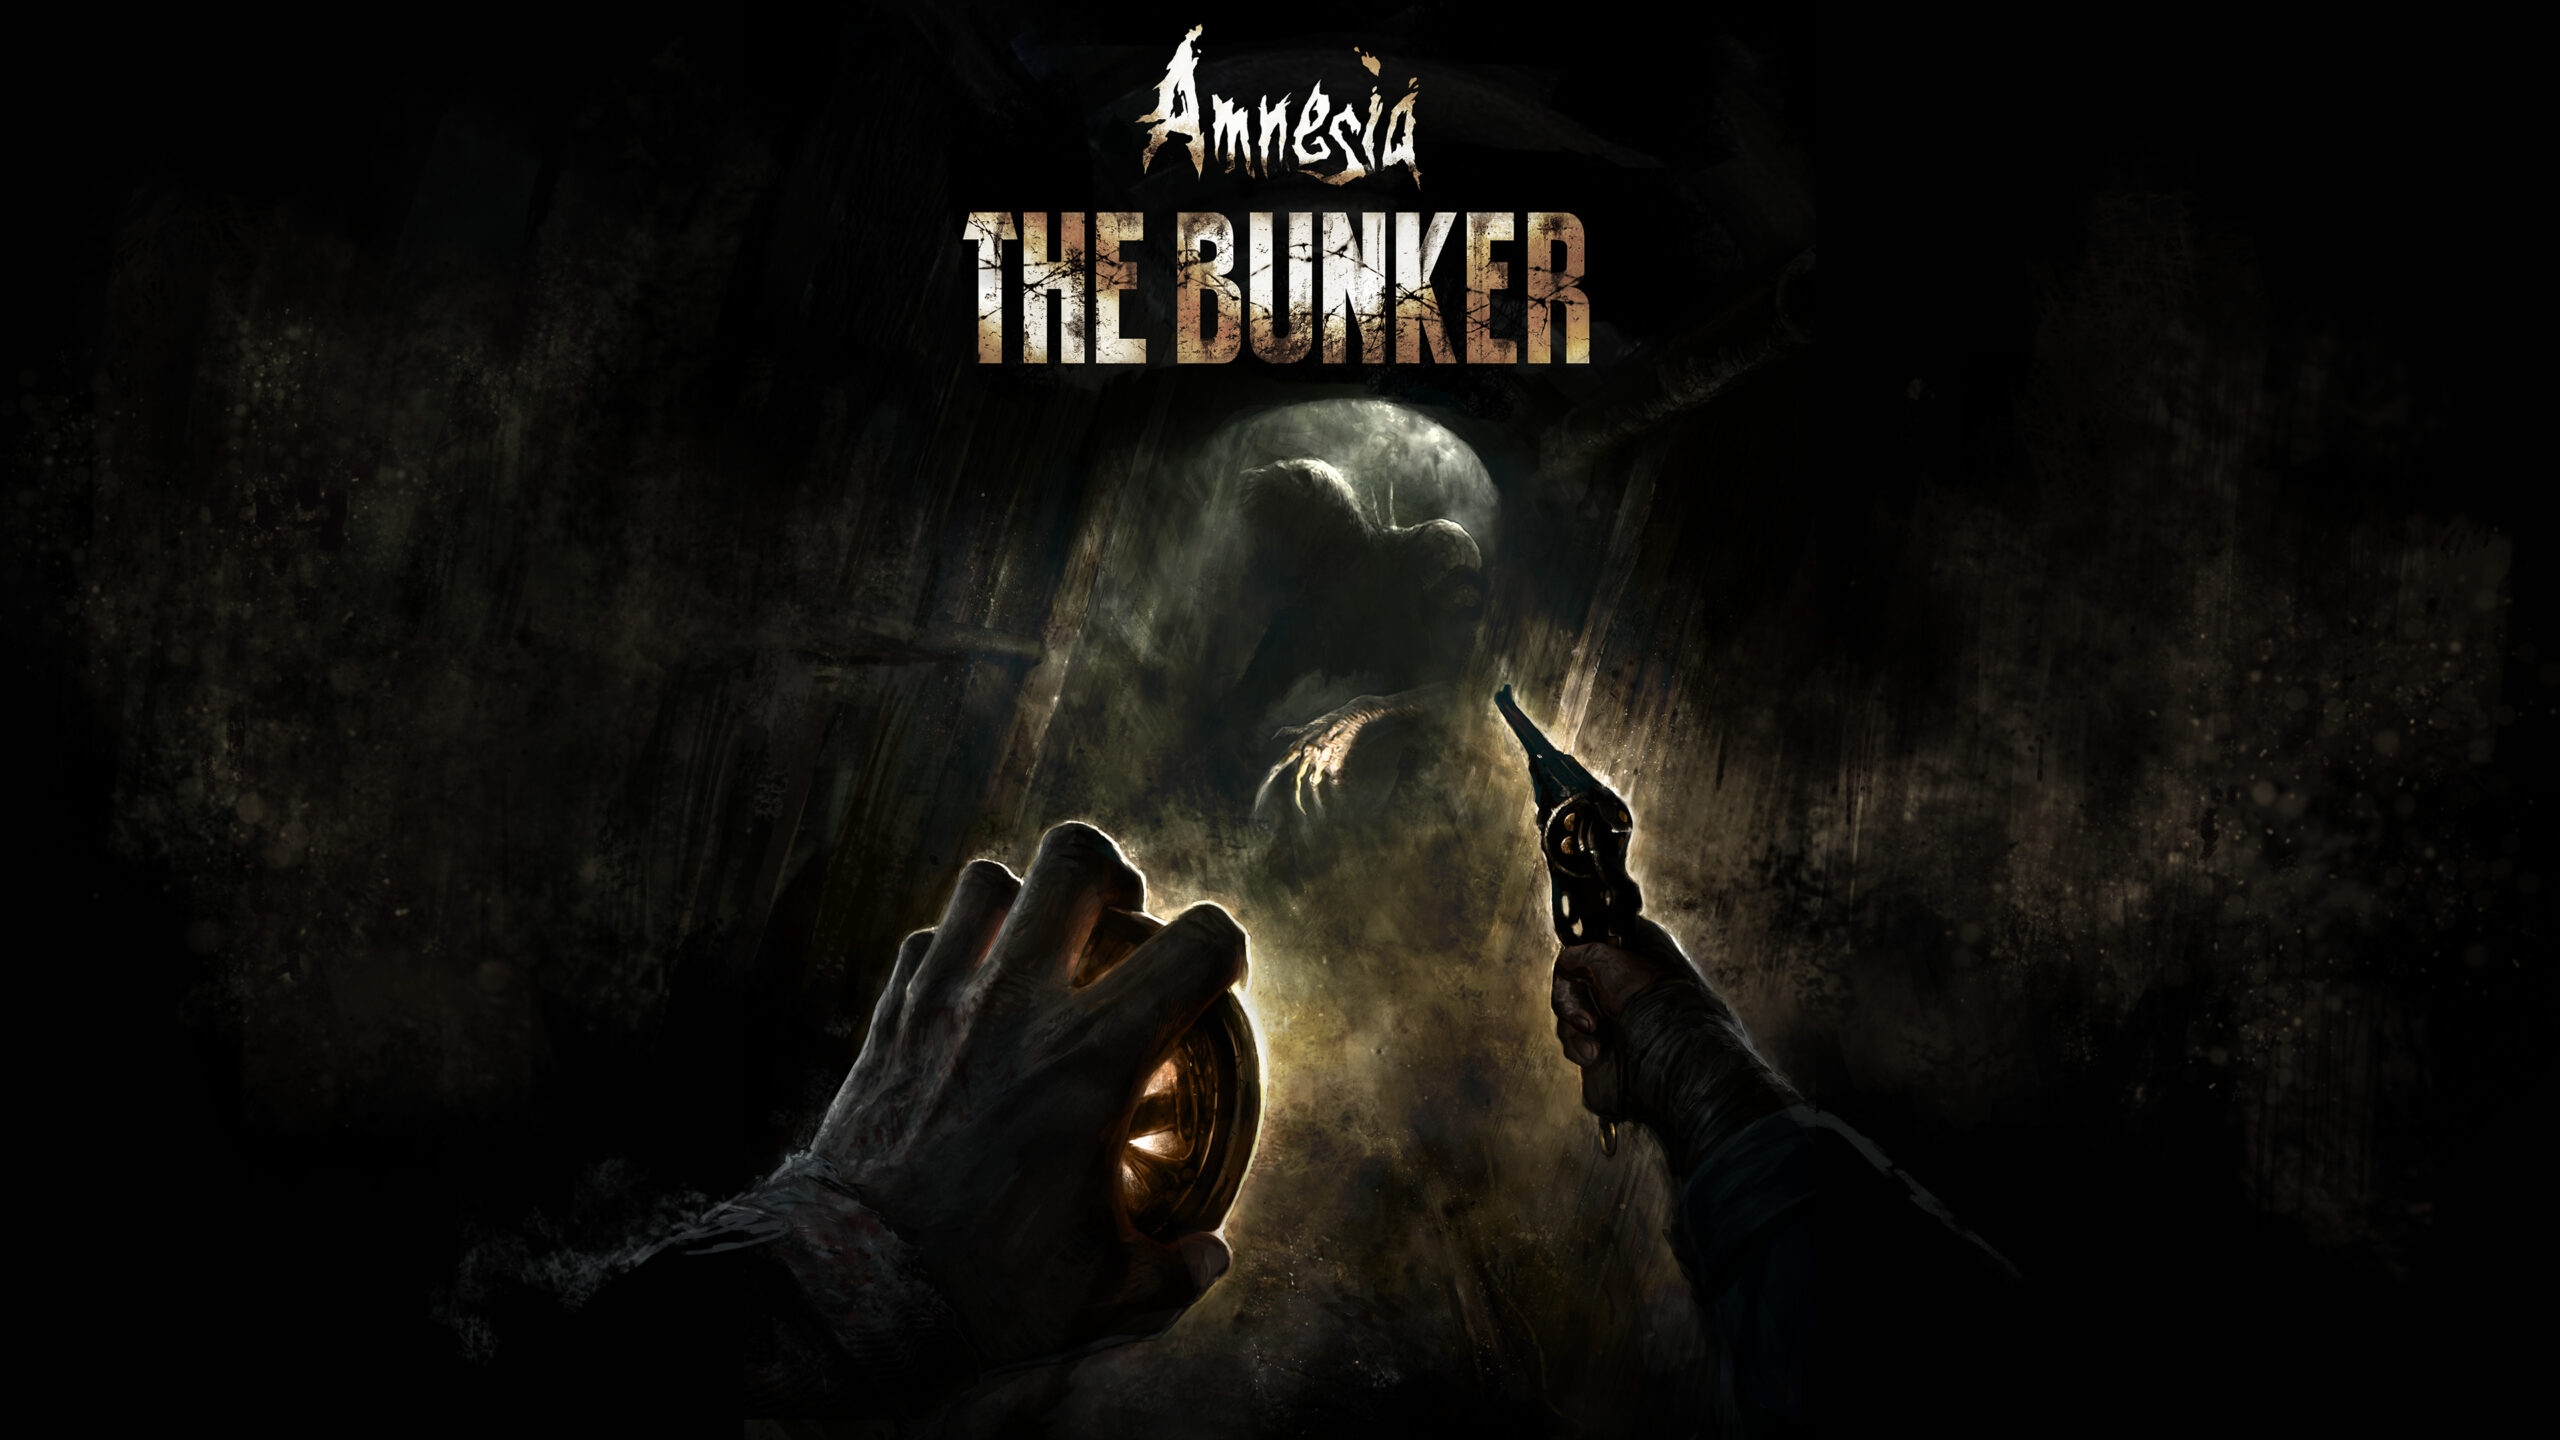 Встречи с монстрами в Amnesia: The Bunker показали в новом видео по игре: с сайта NEWXBOXONE.RU